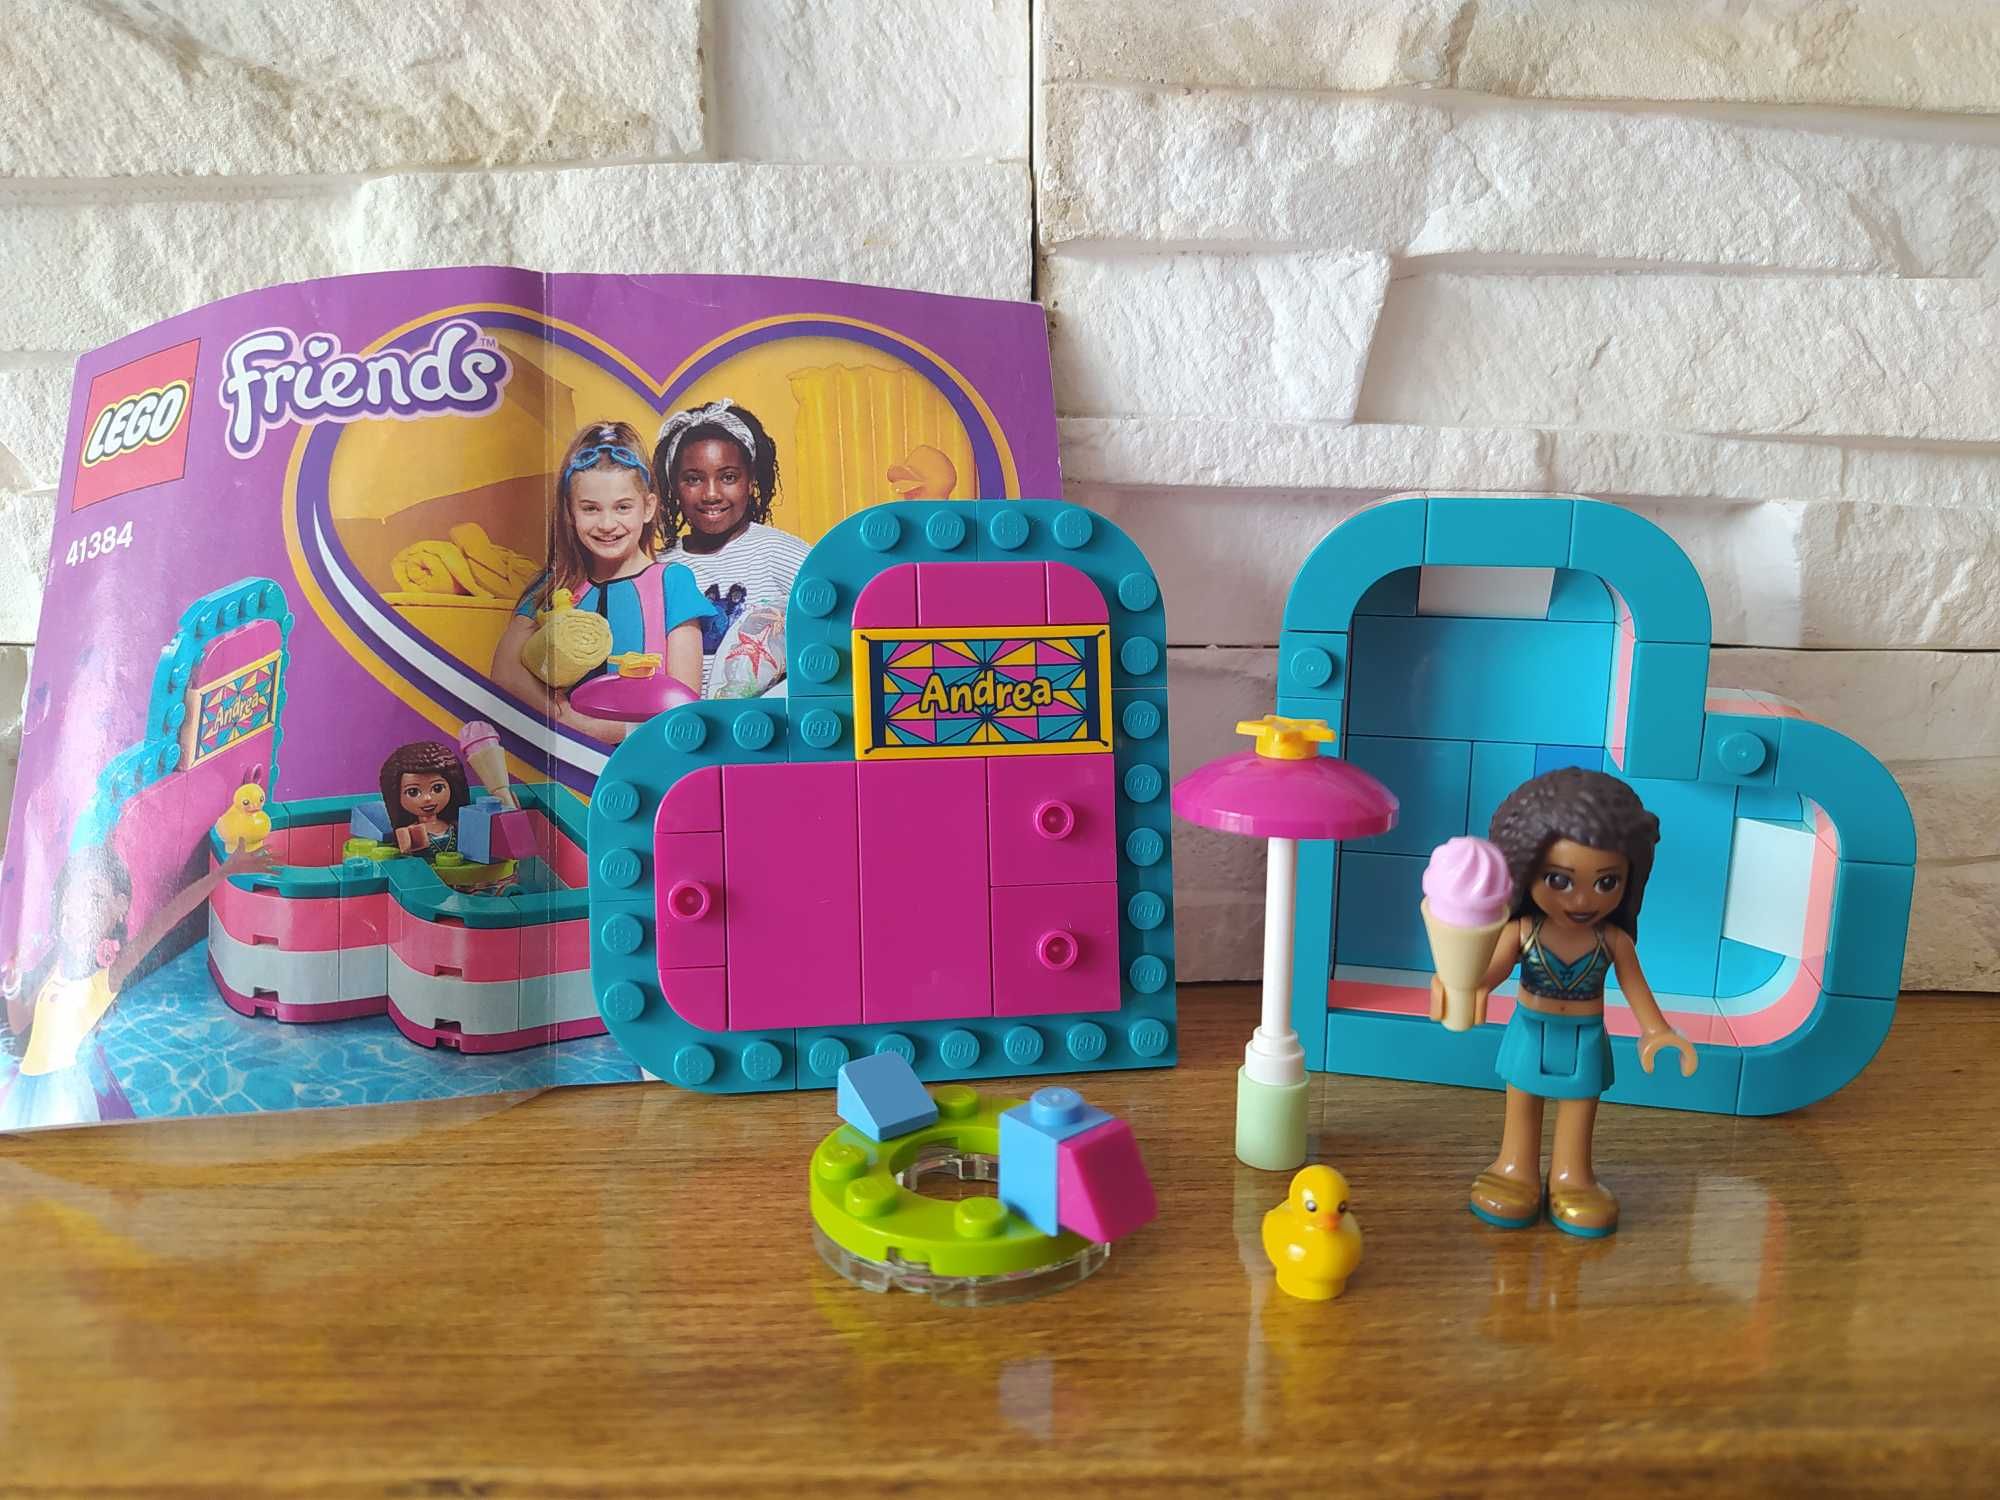 4x pudełko przyjaźni domek w kształcie serca Lego Friends